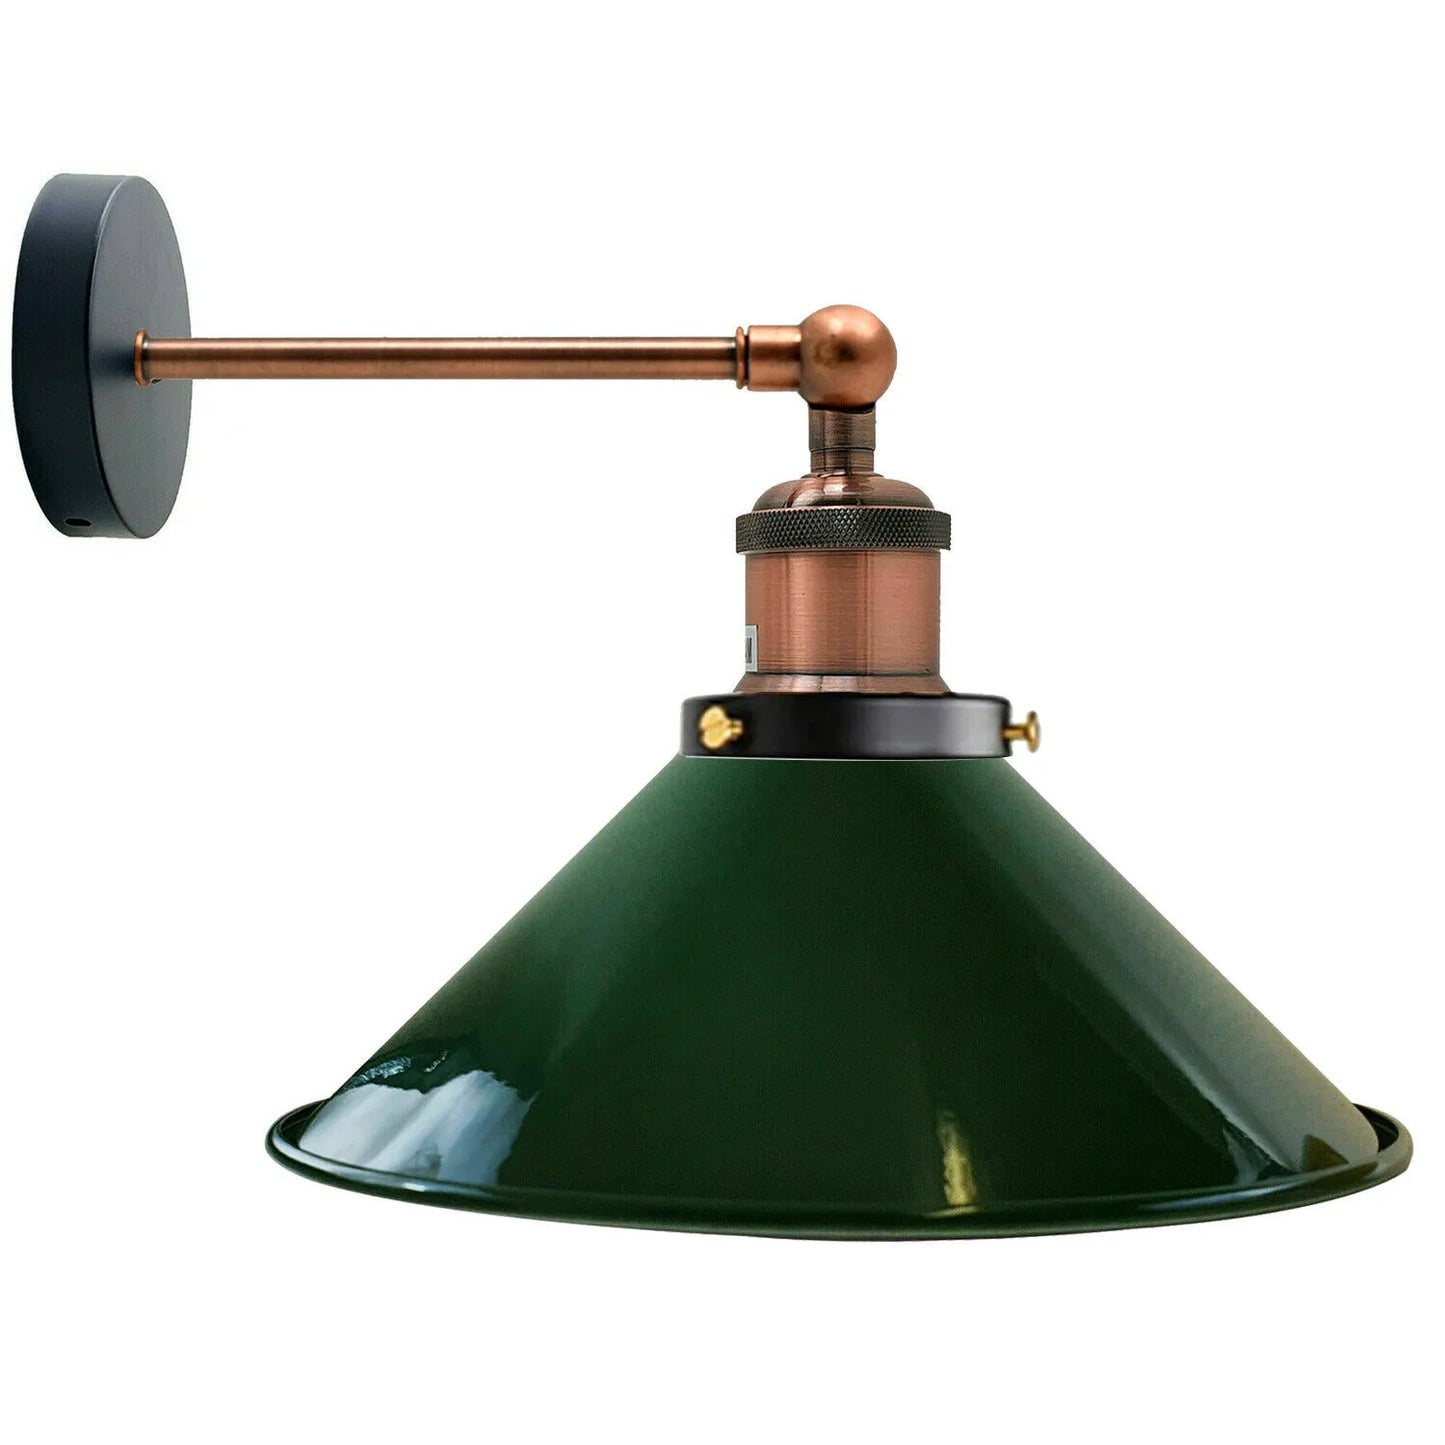 Industrial cone light shades wall light living room-e27 holder